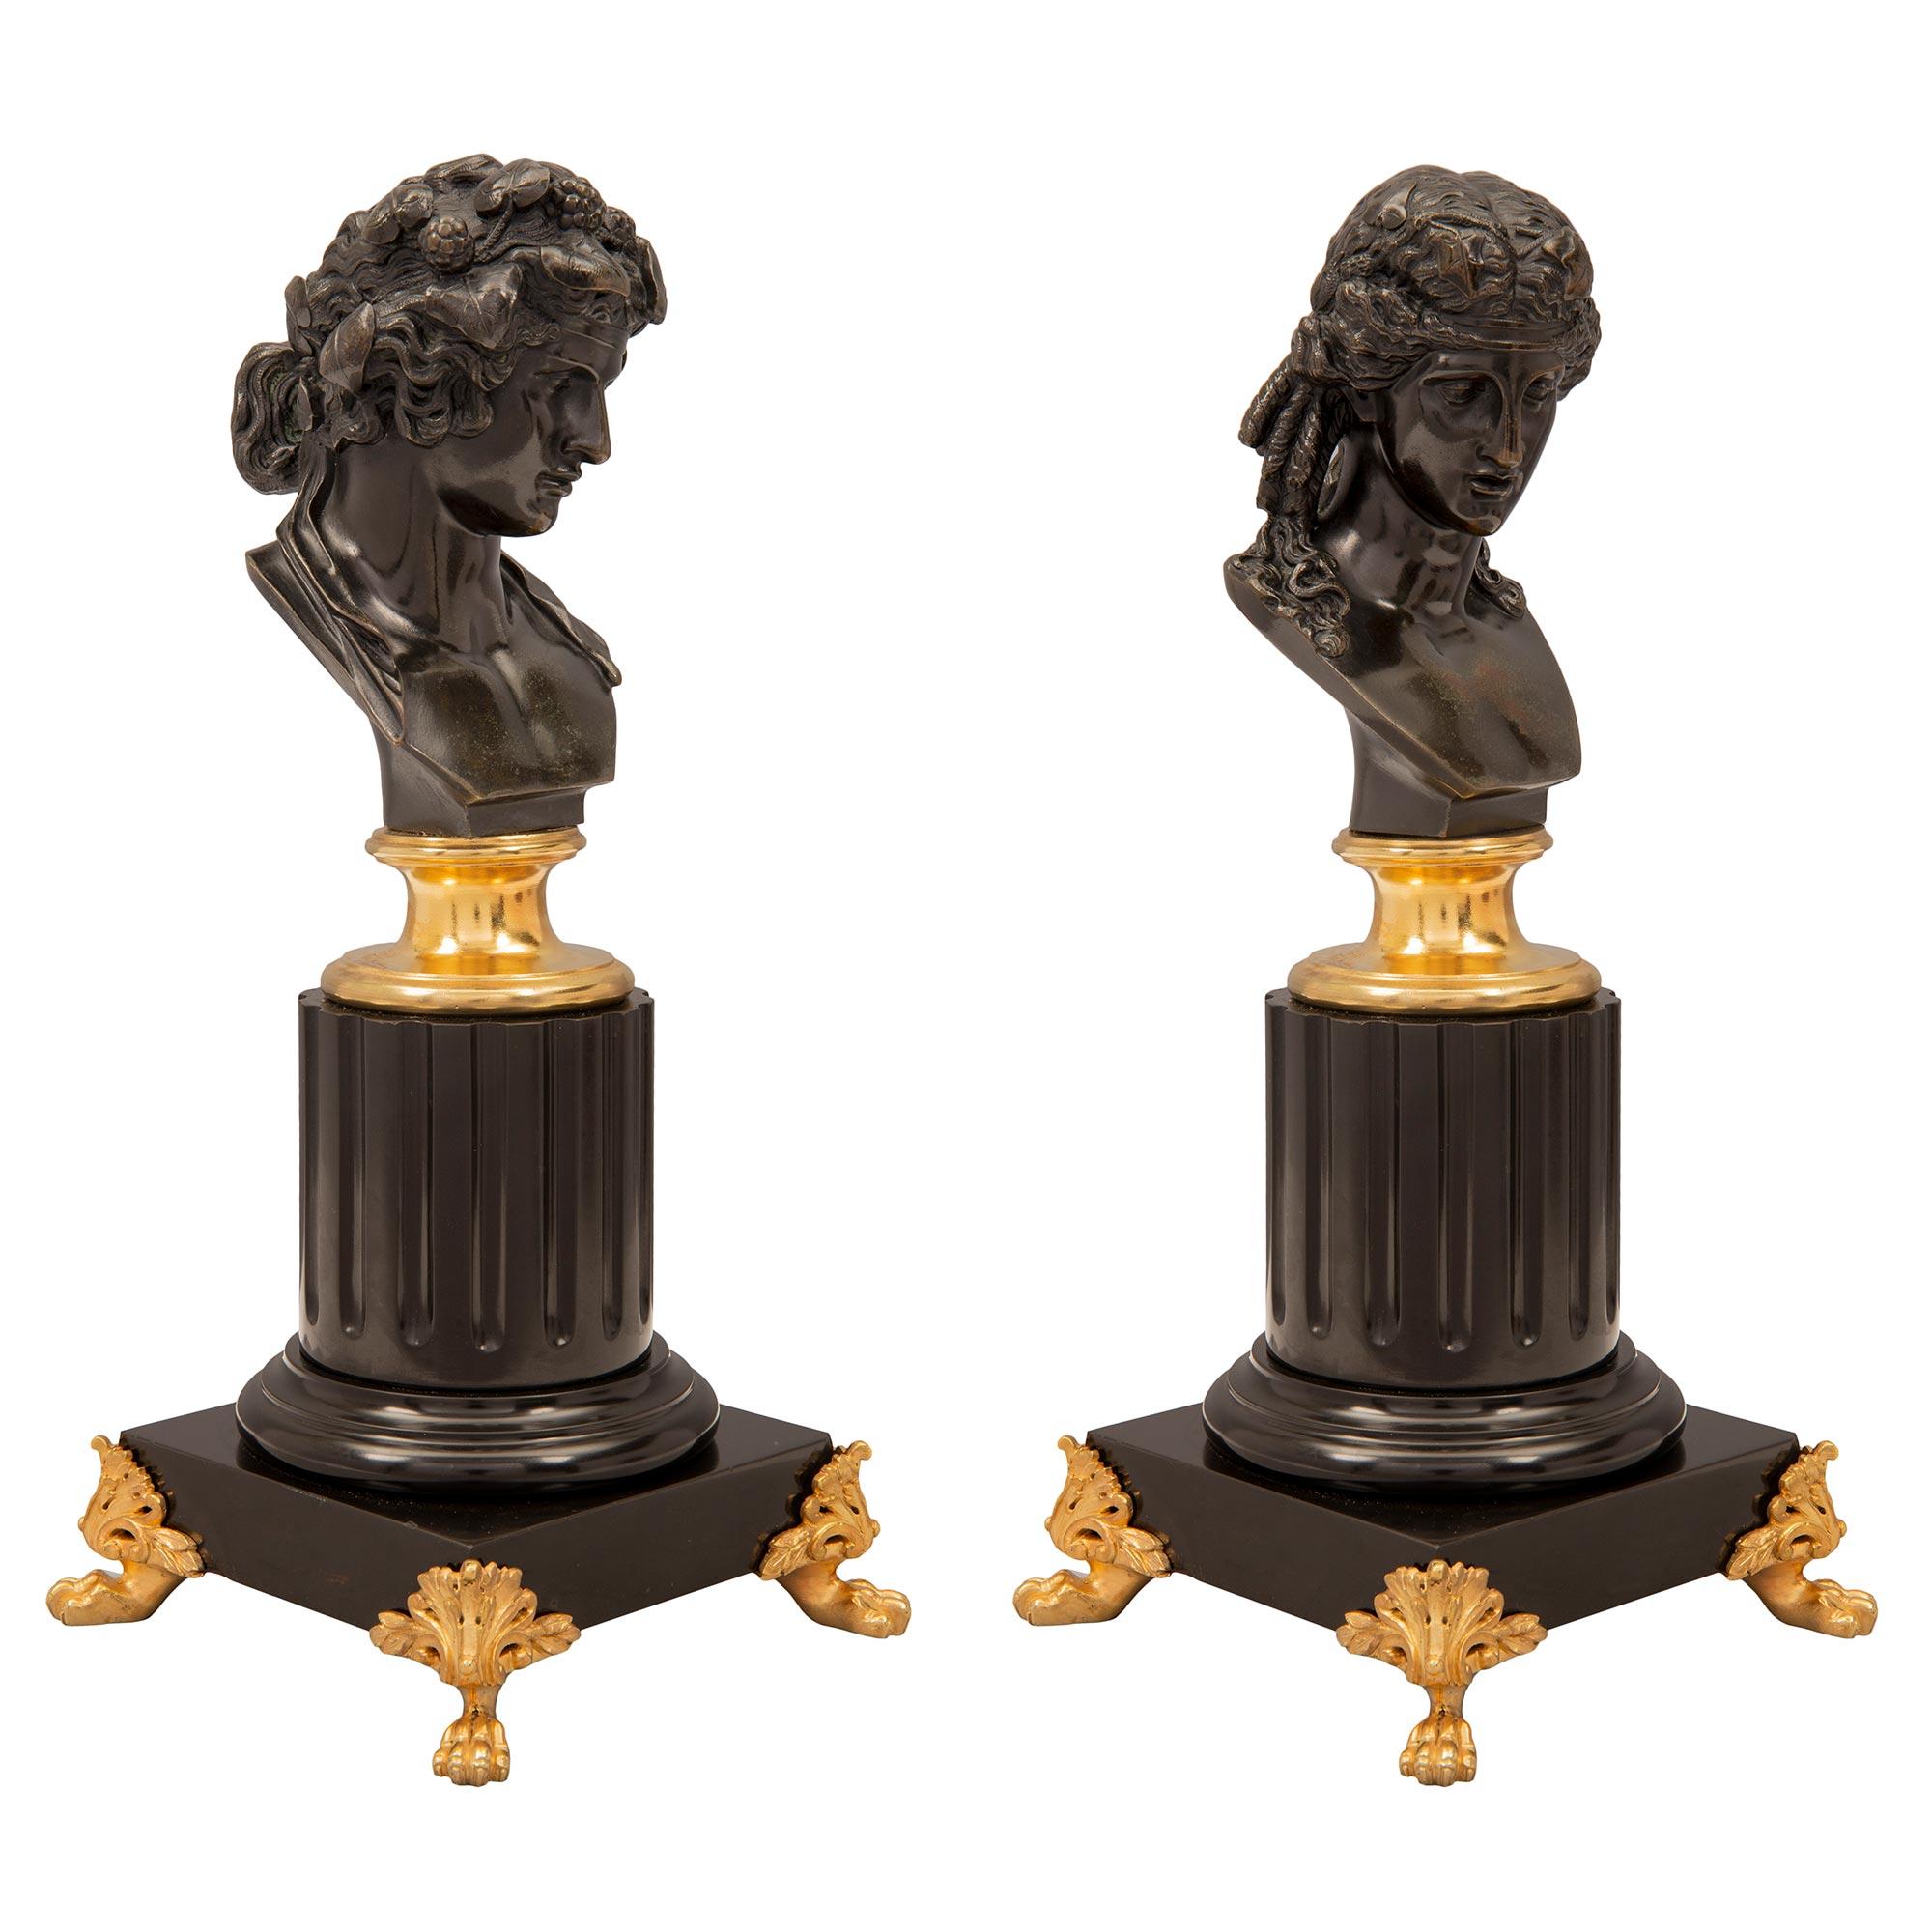 Exceptionnelle paire de statuettes d'Apollon et de Daphné en bronze patiné, bronze doré et marbre noir de Belgique, datant du XIXe siècle. Chaque statue de petite taille est surélevée par des supports en bronze doré percés, dotés de jolis pieds et